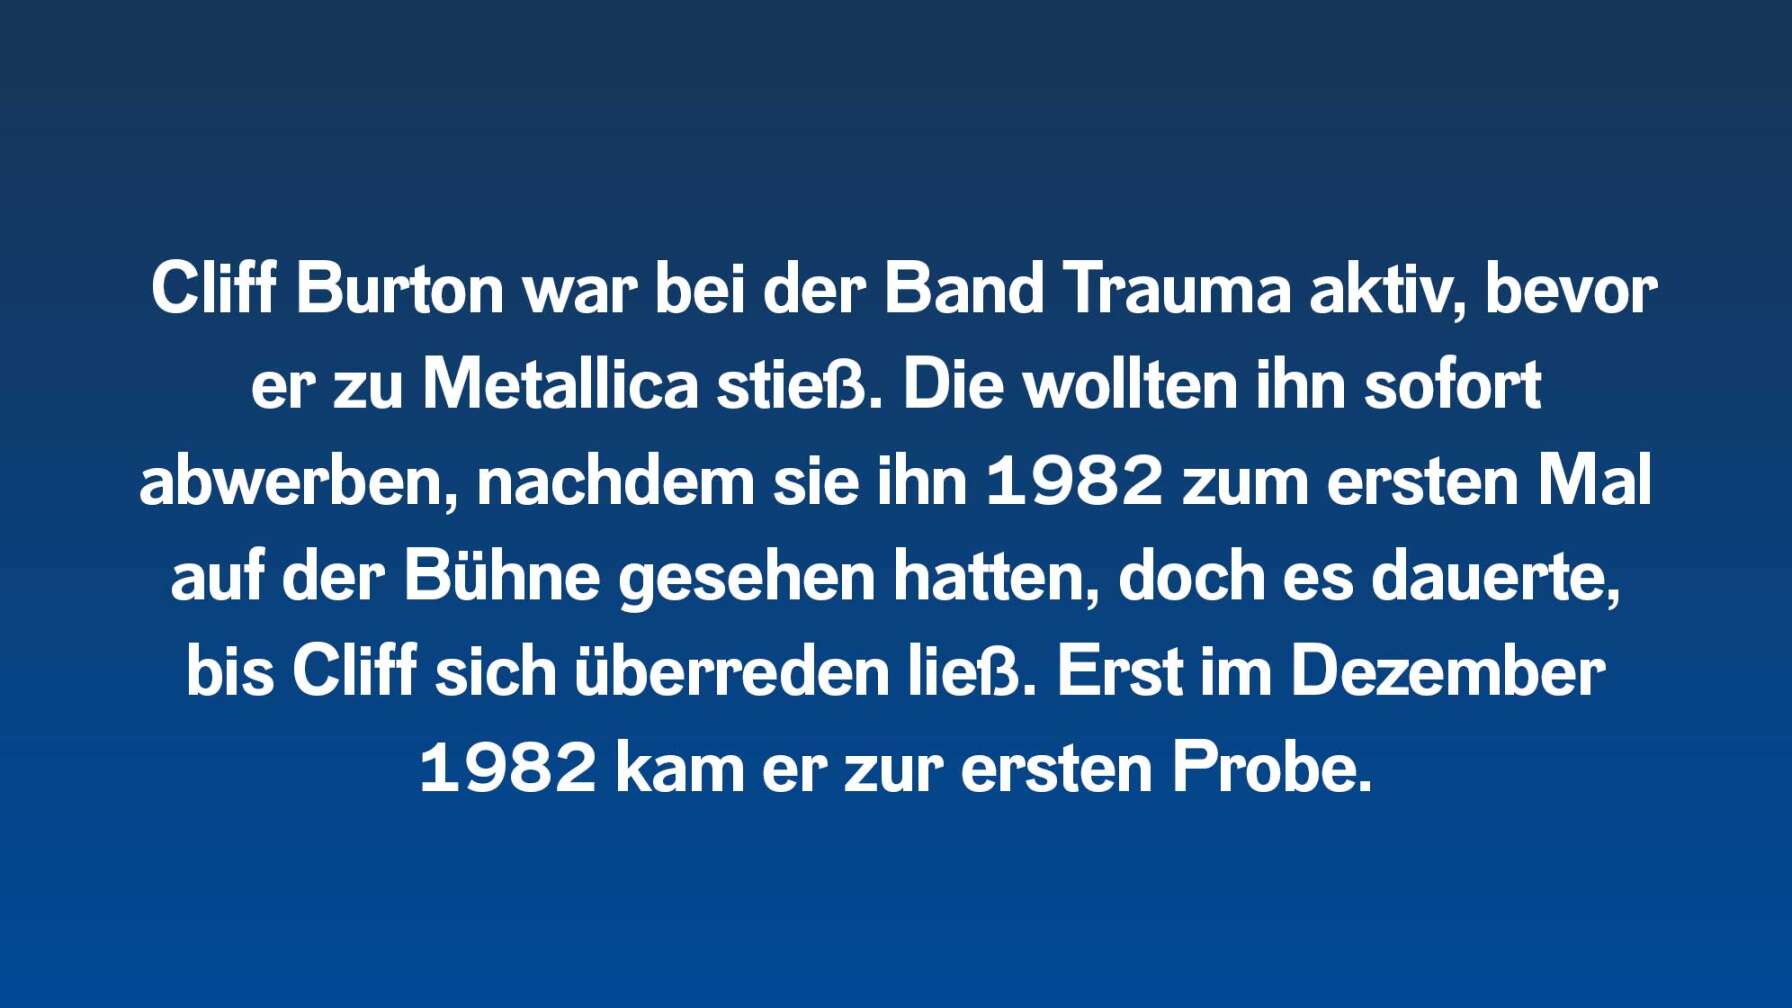 Cliff Burton war bei der Band Trauma aktiv, bevor er zu Metallica stieß. Die wollten ihn sofort abwerben, nachdem sie ihn 1982 zum ersten Mal auf der Bühne gesehen hatten, doch es dauerte, bis Cliff sich überreden ließ. Erst im Dezember 1982 kam er zur ersten Probe.